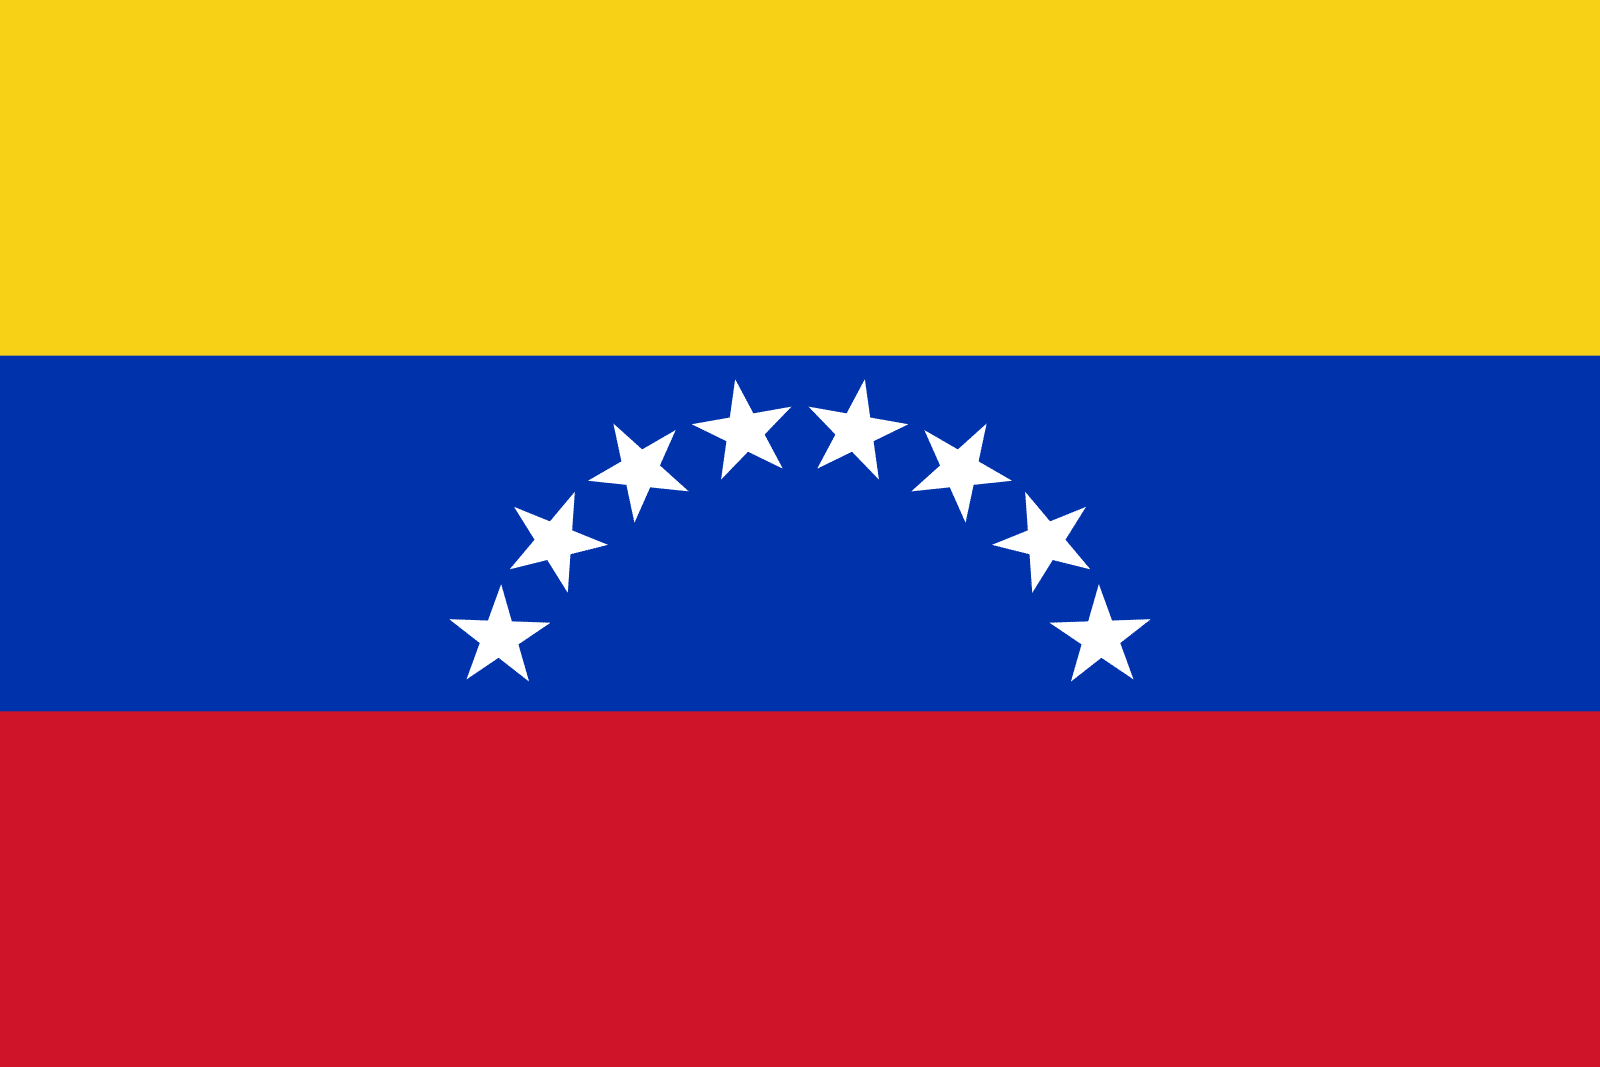 Venezuelai zászló